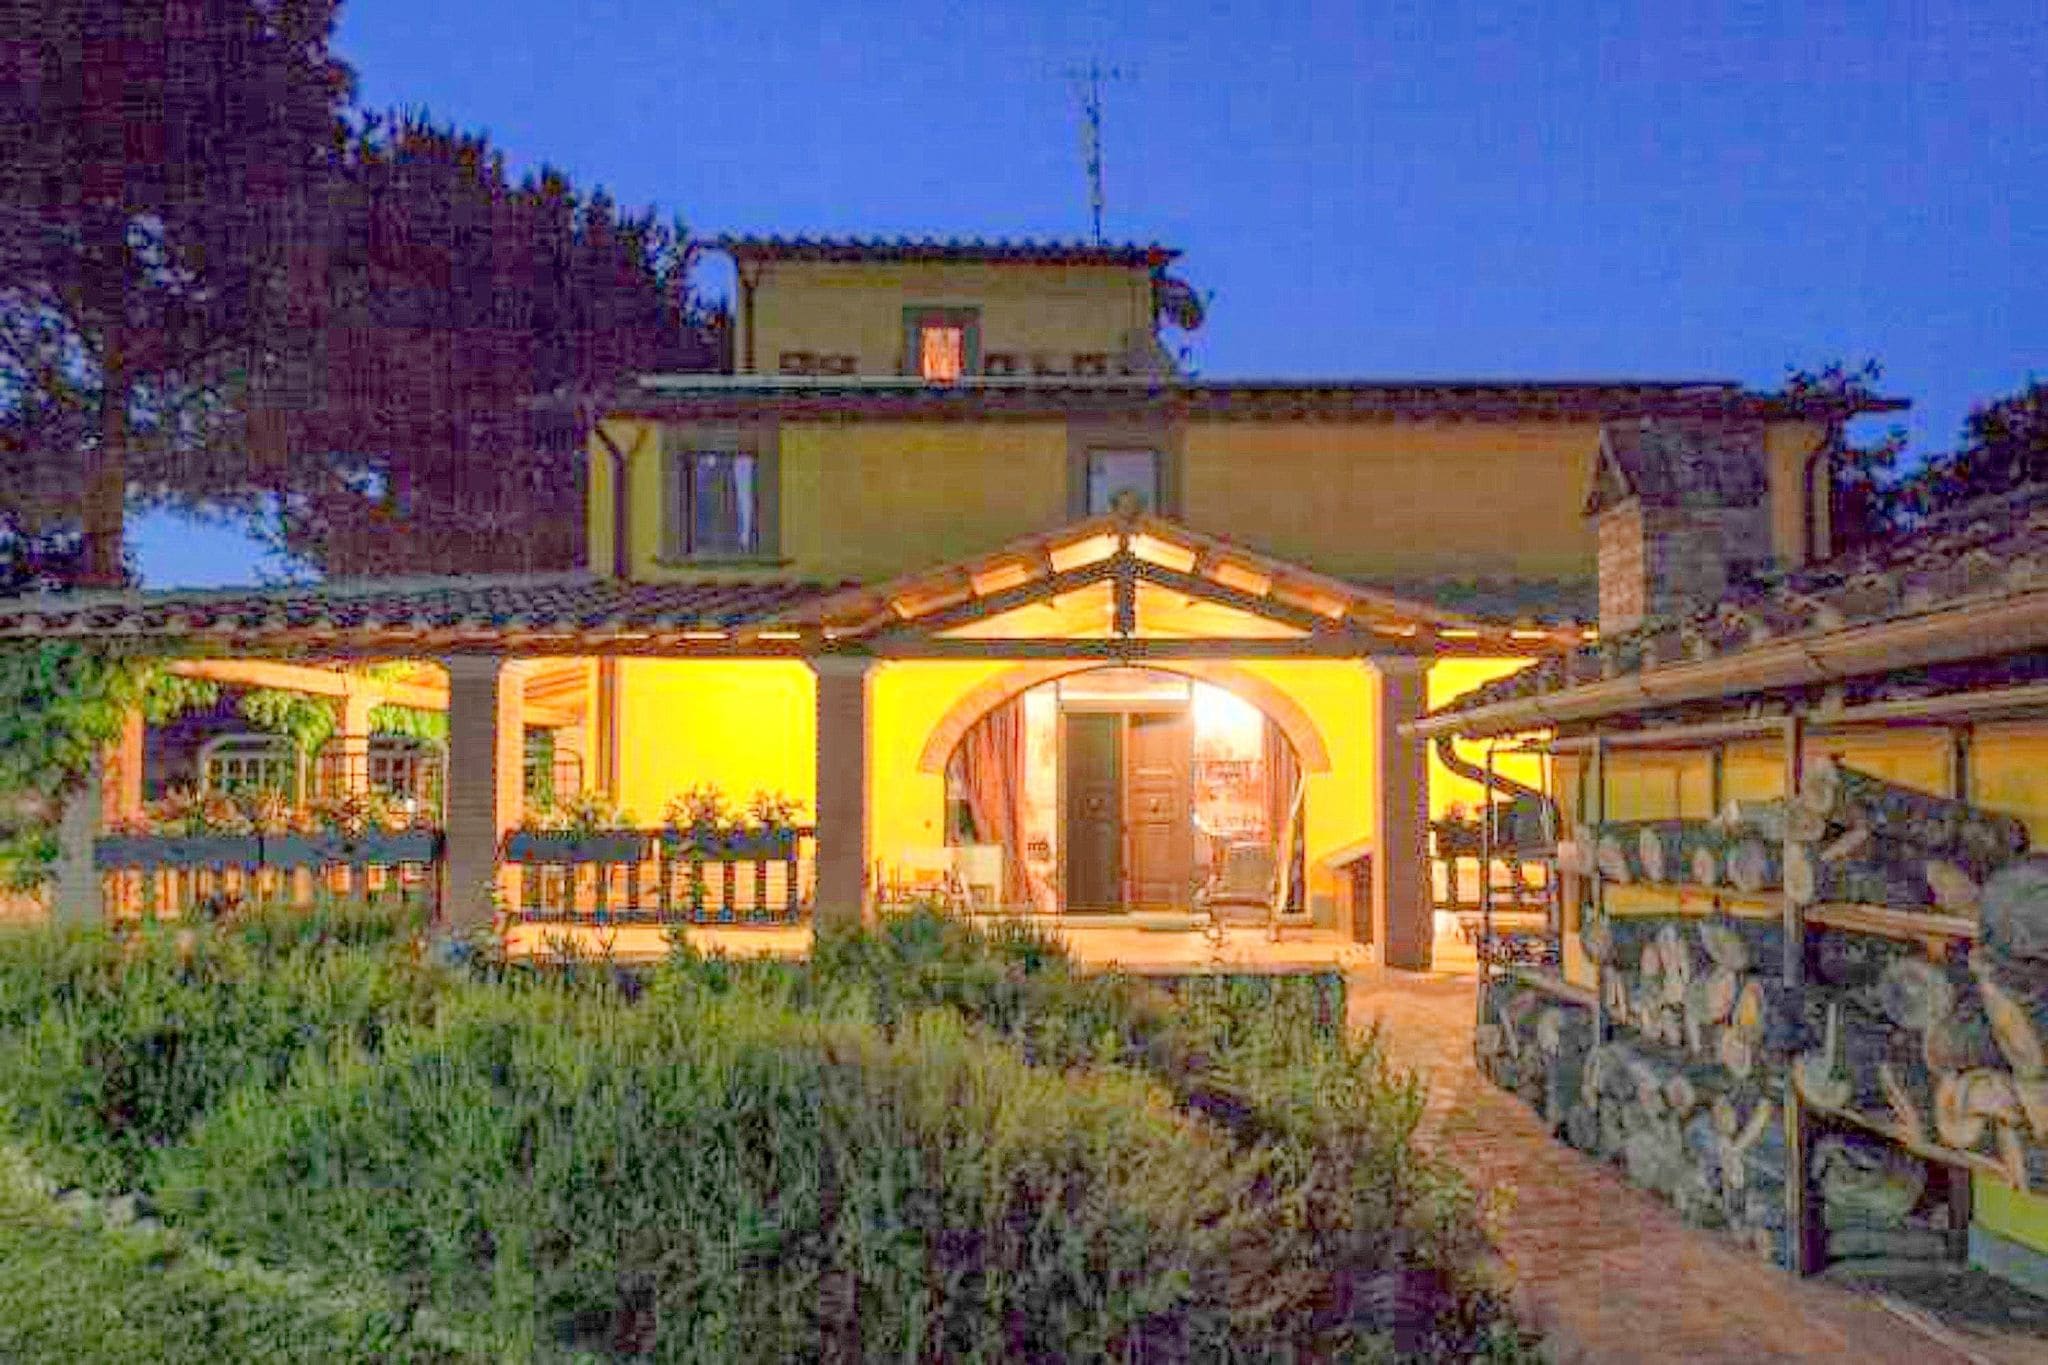 Ontdek de kleuren en smaken van Toscane in dit prachtige landgoed